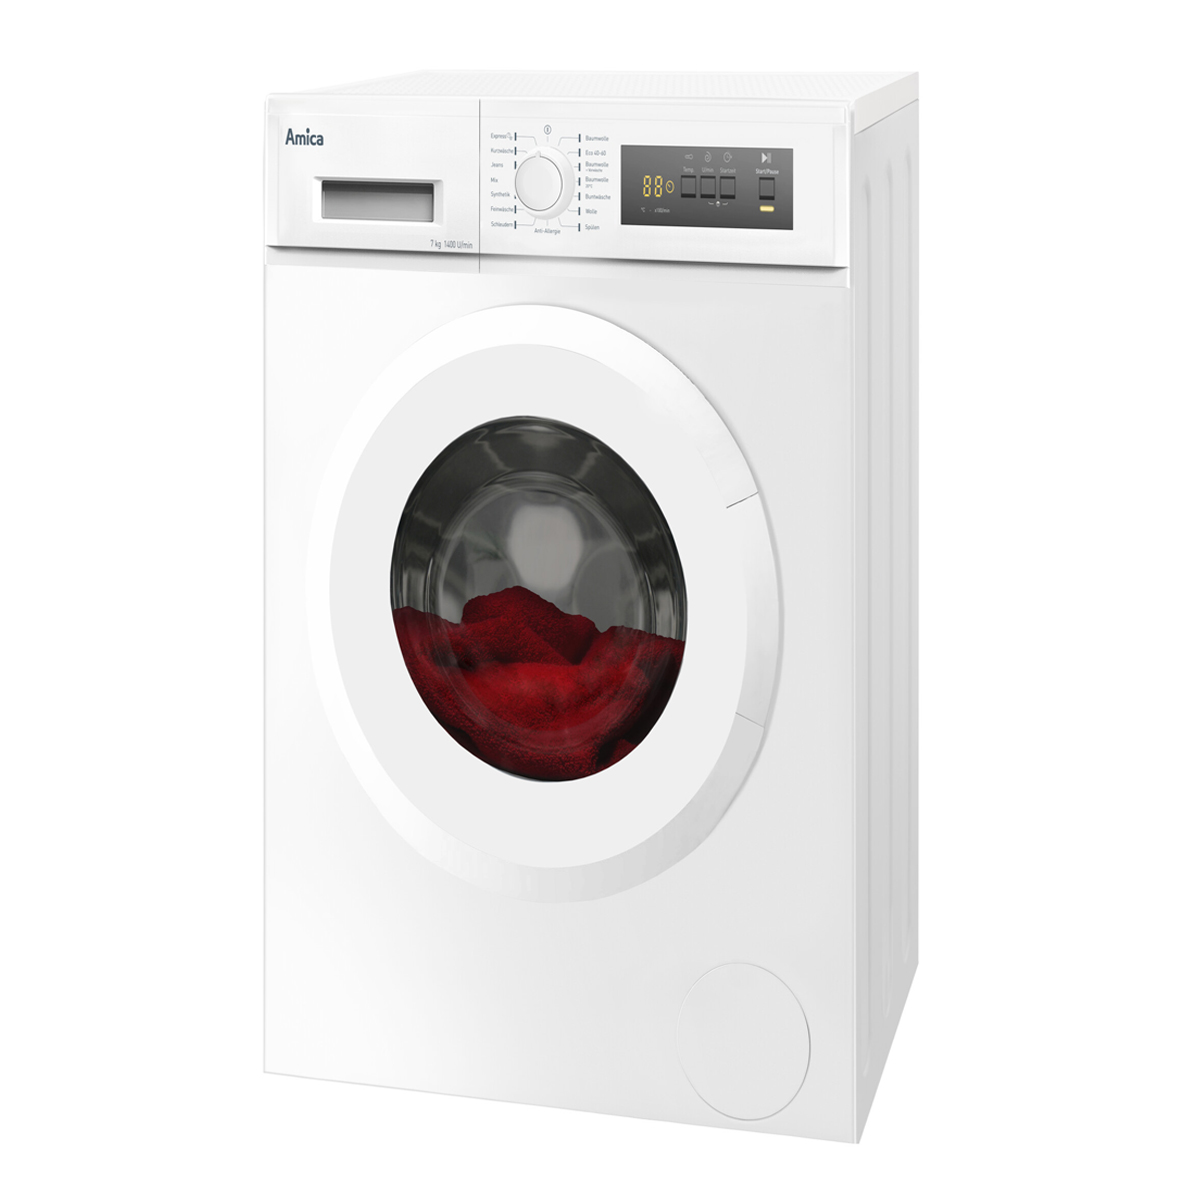 Weiß kg, Stopp Aqua 7kg Waschmaschine Startzeitvorwahl Frontlader (7 U/Min Waschmaschine AMICA 1400 D)